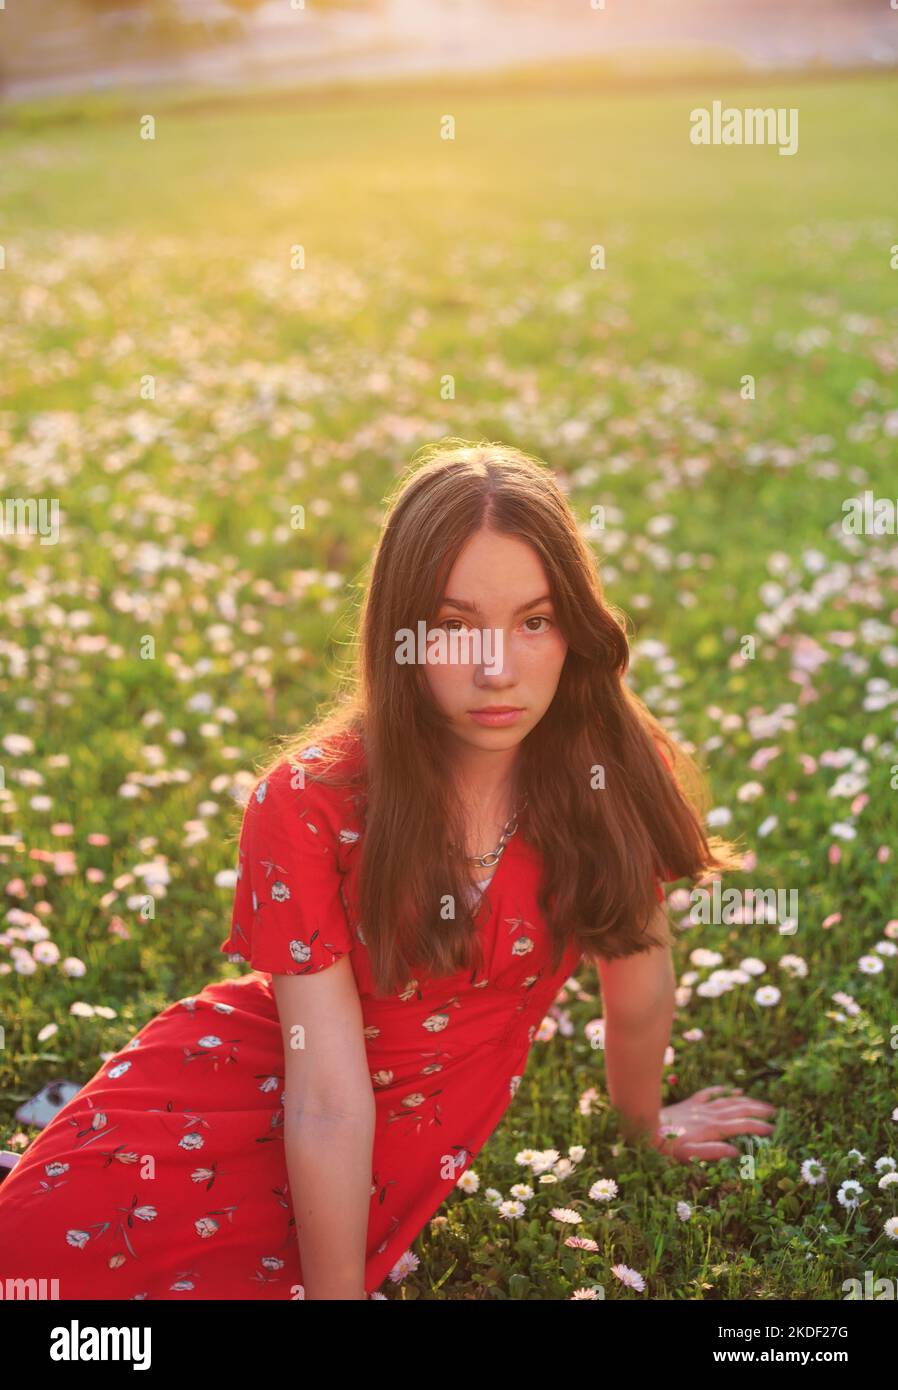 Junge schöne gir in rotem Kleid isl ruht auf frischem Frühlingsgras Stockfoto